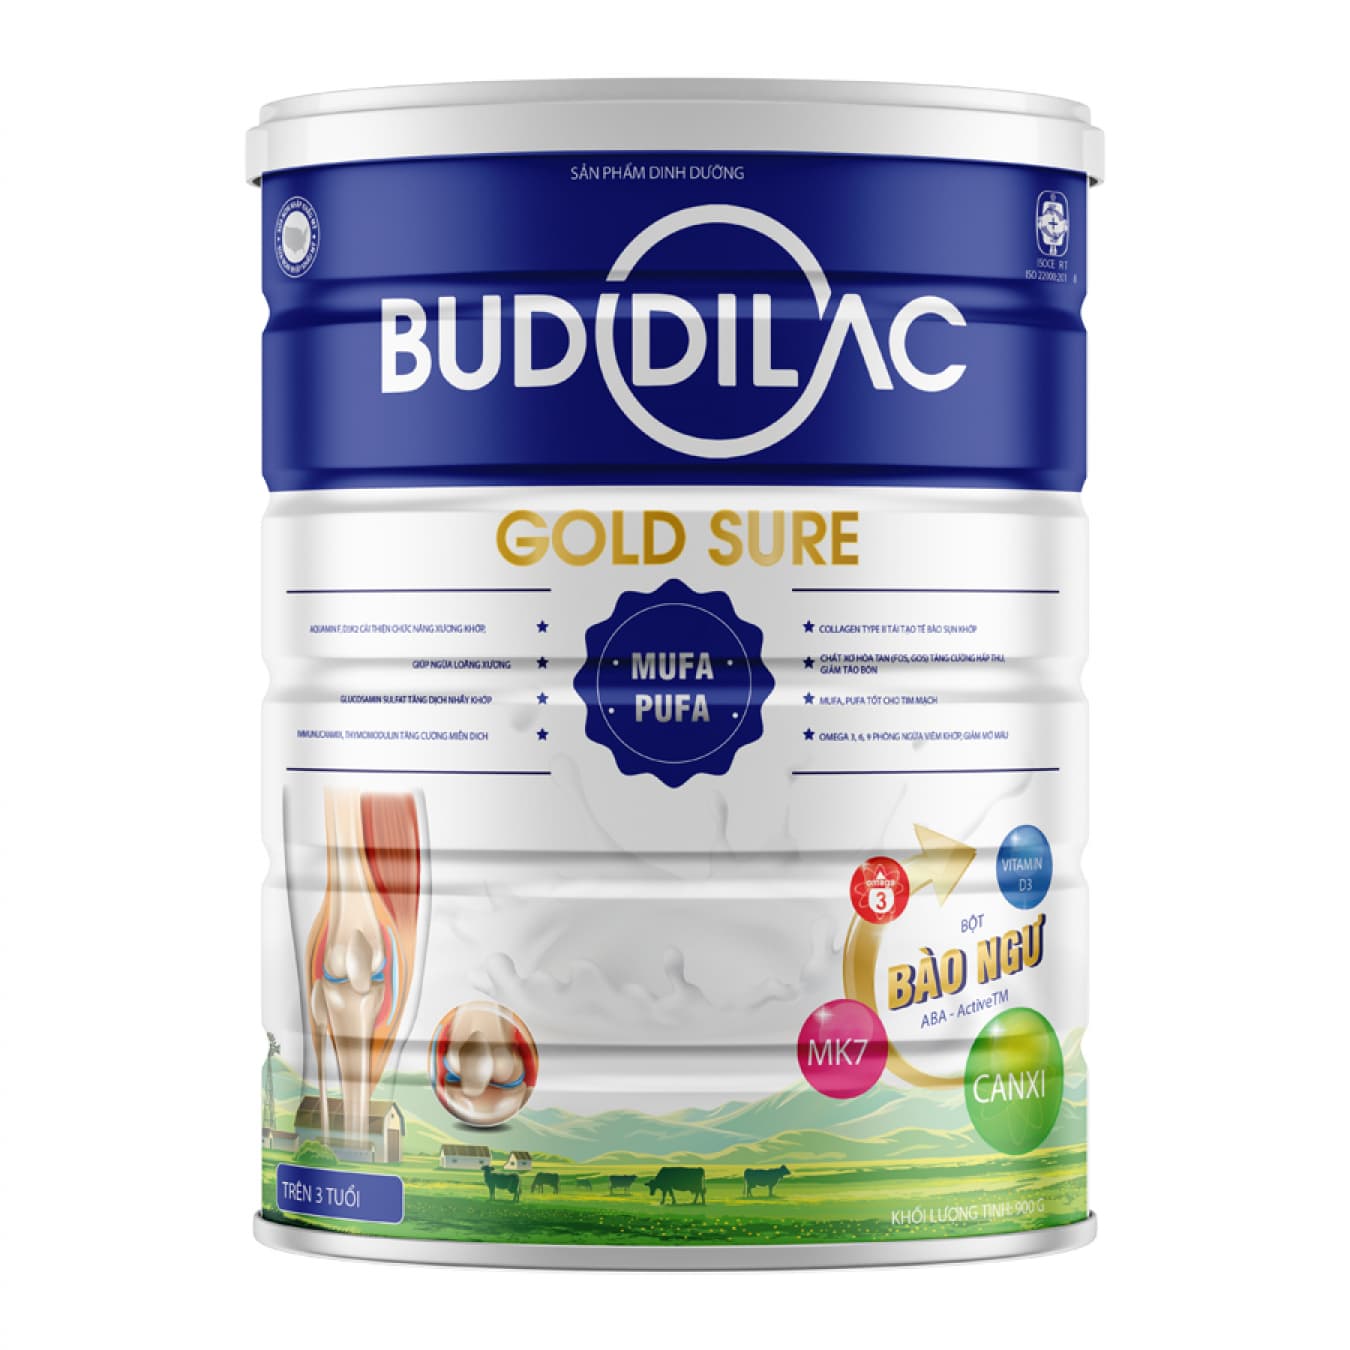 Sữa Buddilac Gold Sure hộp 900g phòng ngừa loãng xương